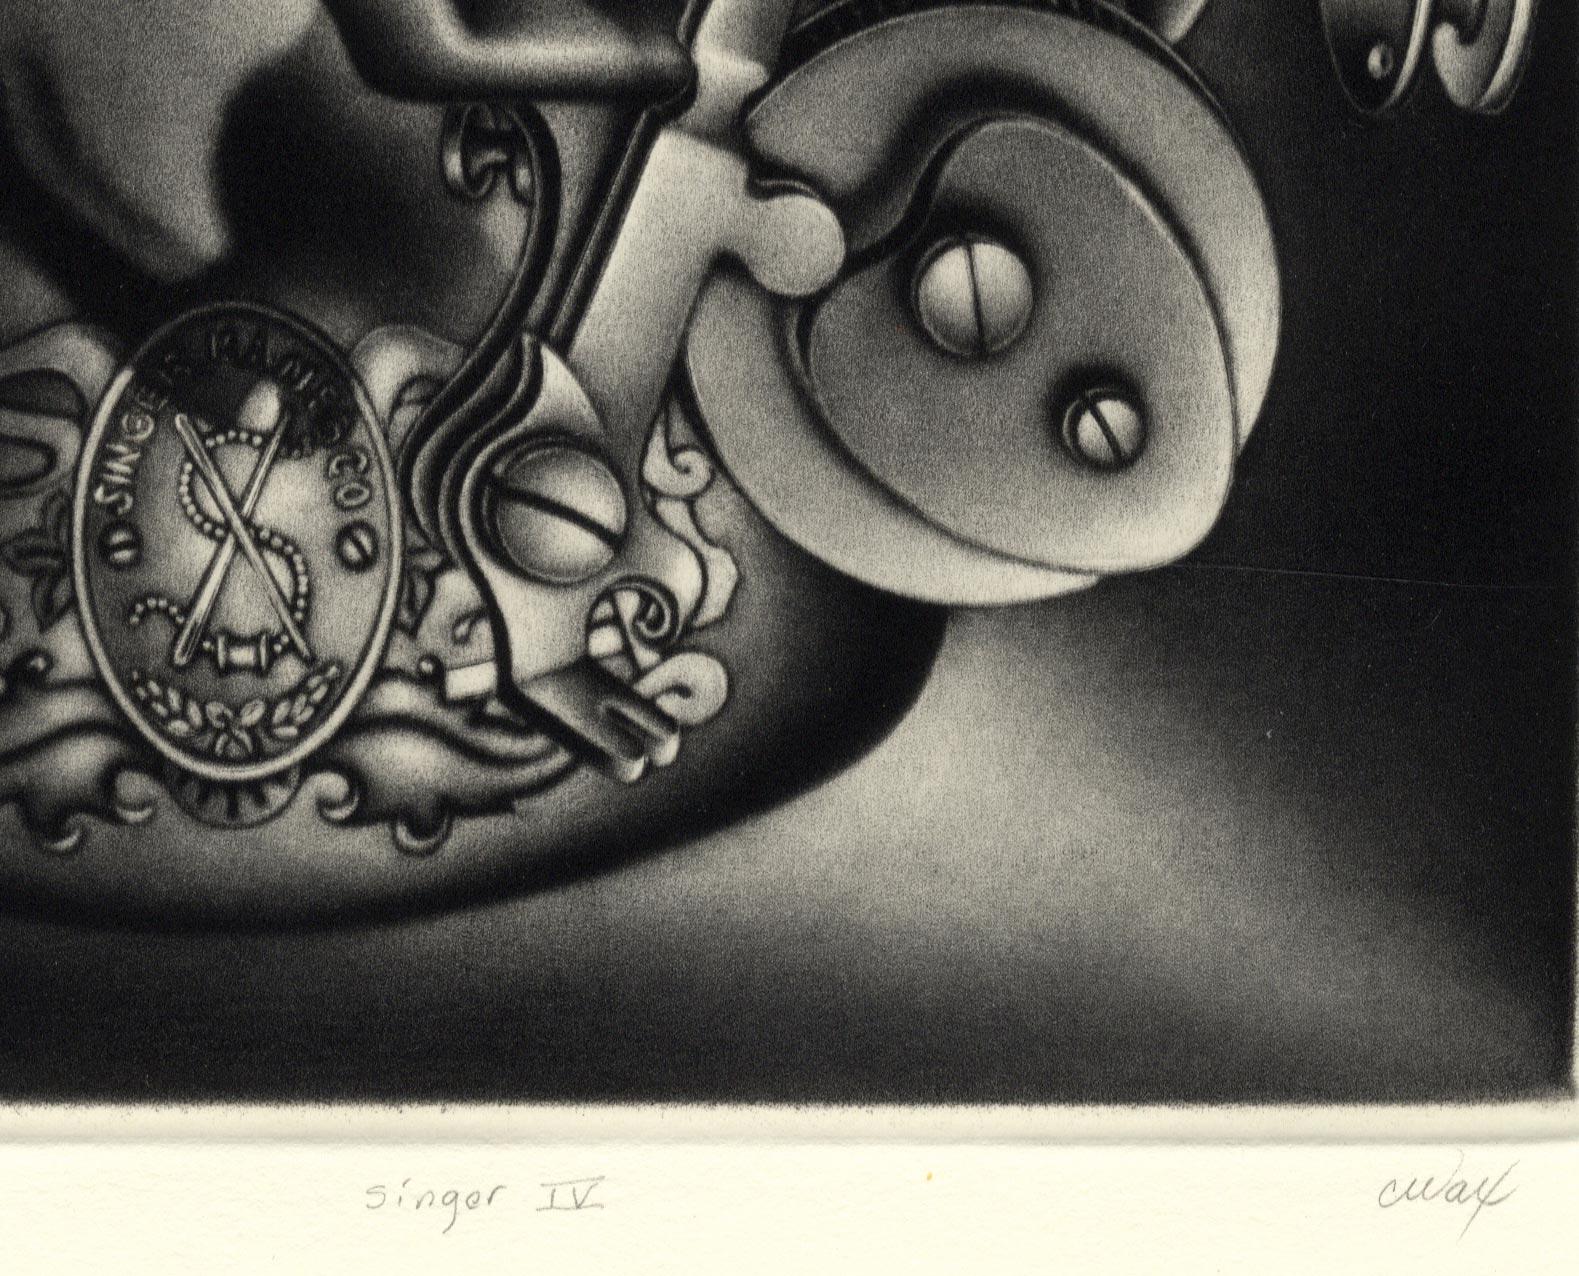 Singer IV (une partie d'un machine à écrire emblématique) - Contemporain Print par Carol Wax